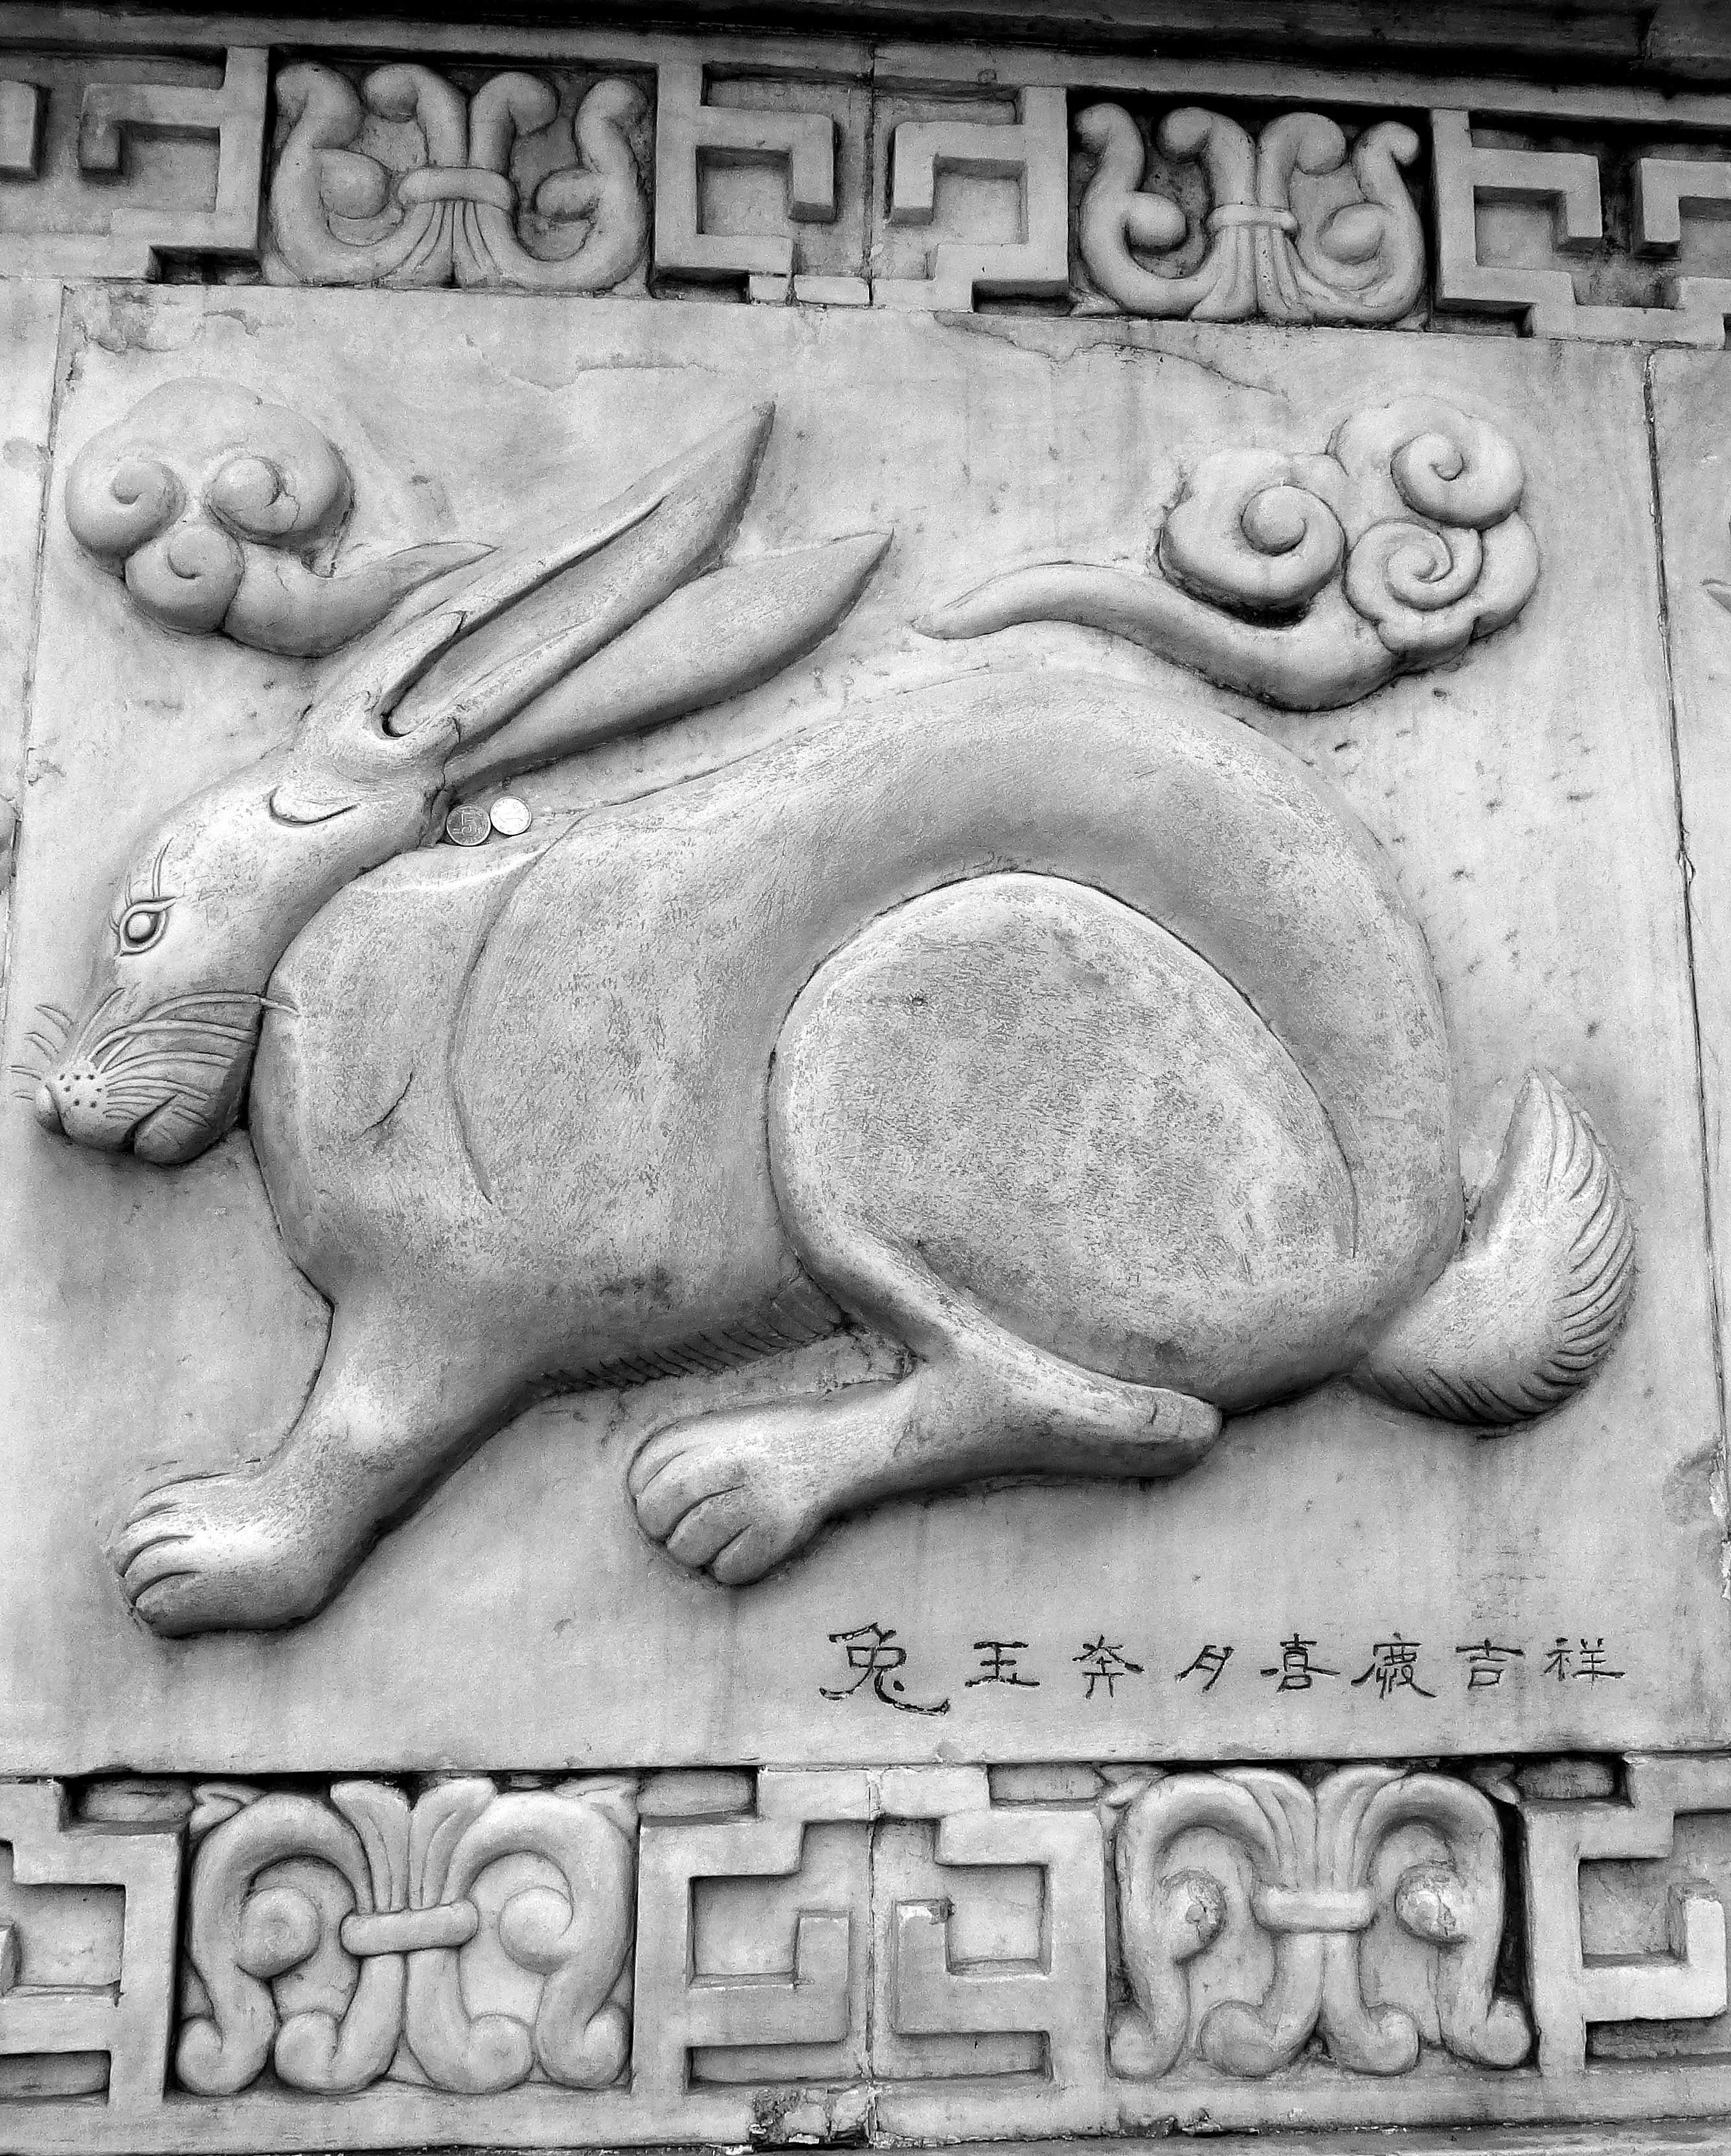 rabbit concrete carving